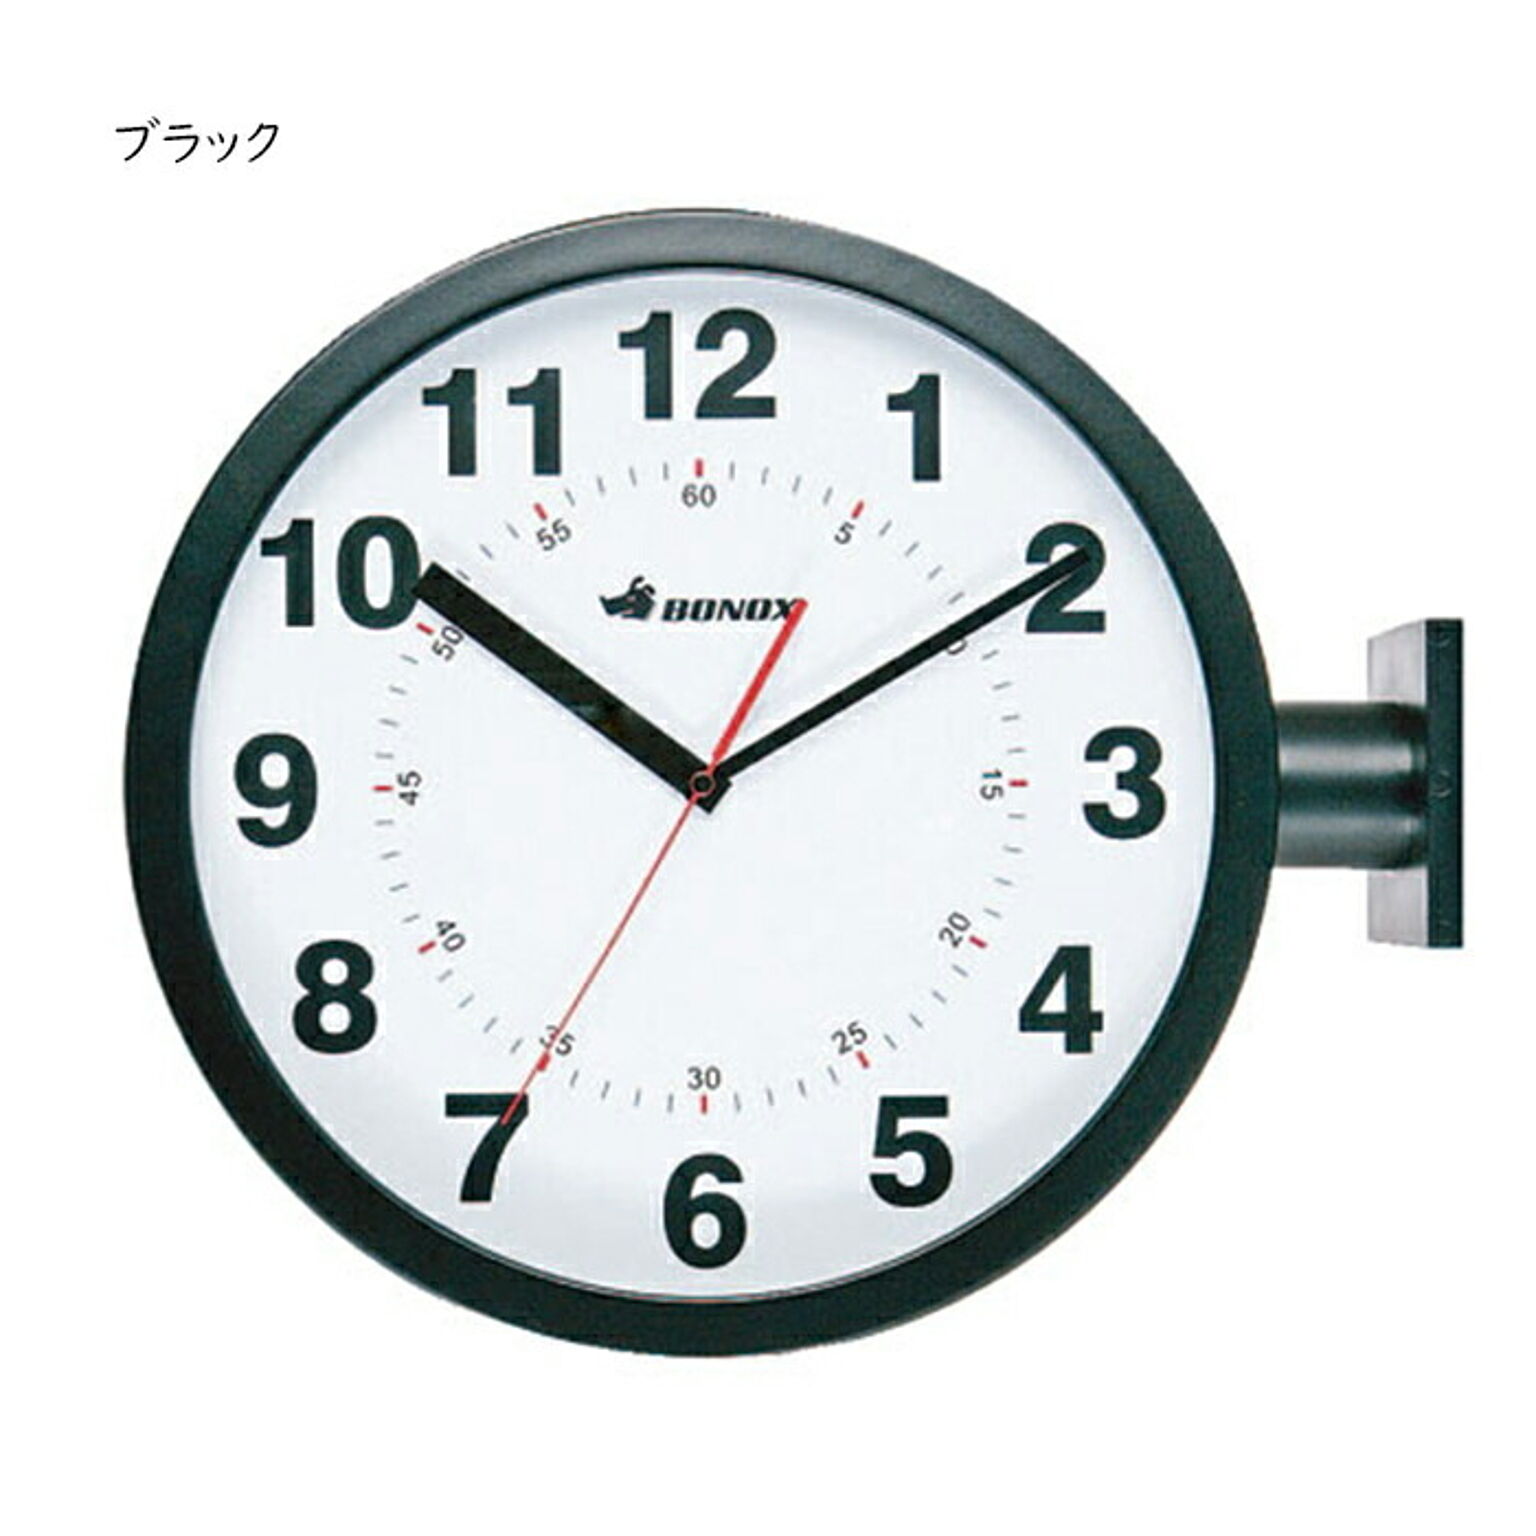 時計 組立式 取り付け式 DOUBLE FACES WALL CLOCK 幅445x奥行130x高さ380mm ダルトン